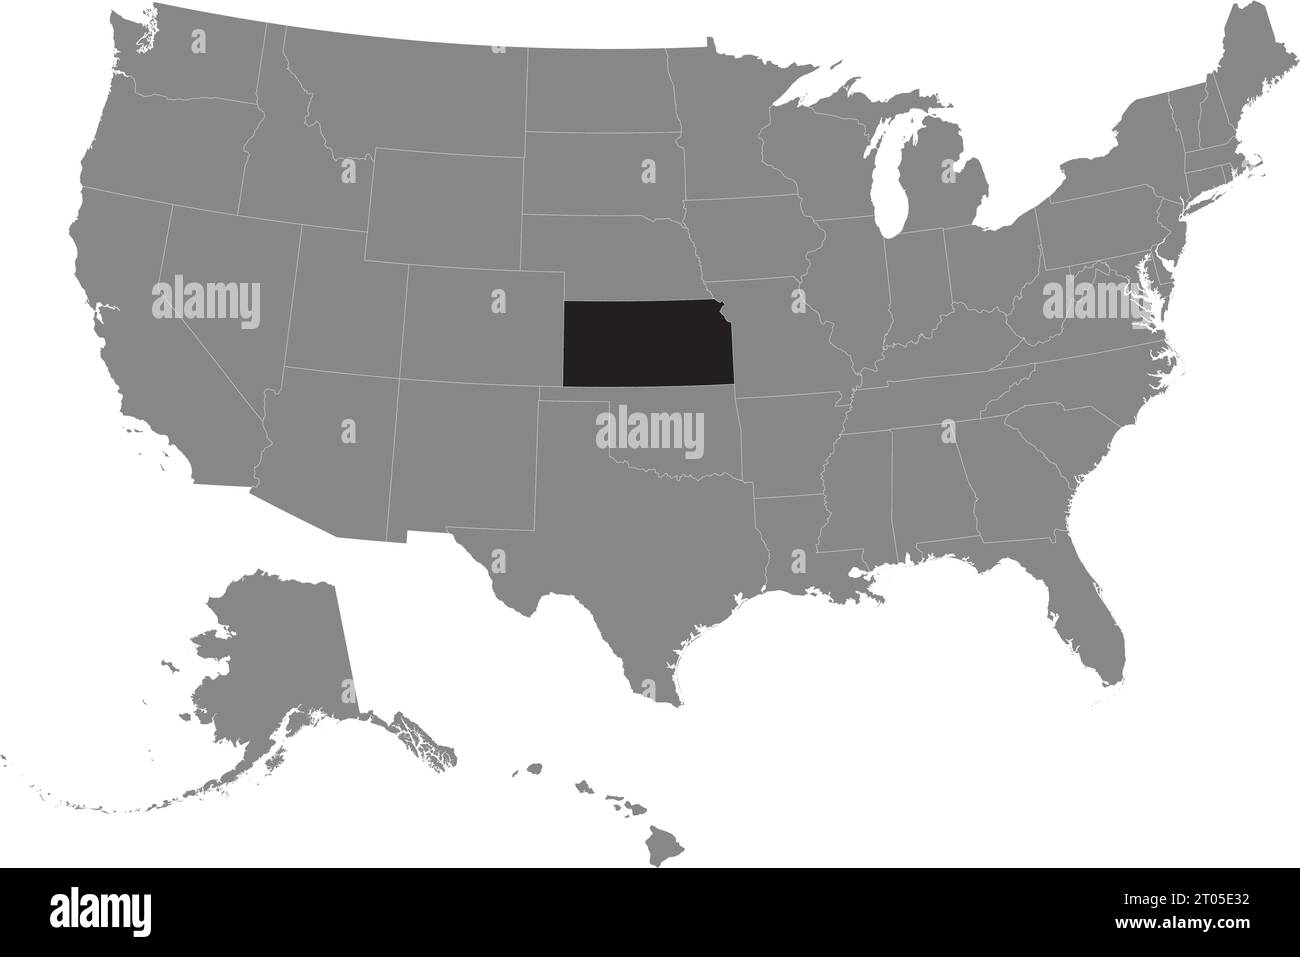 Schwarze CMYK-Bundeskarte von KANSAS in detaillierter grauer, leerer politischer Karte der Vereinigten Staaten von Amerika auf transparentem Hintergrund Stock Vektor